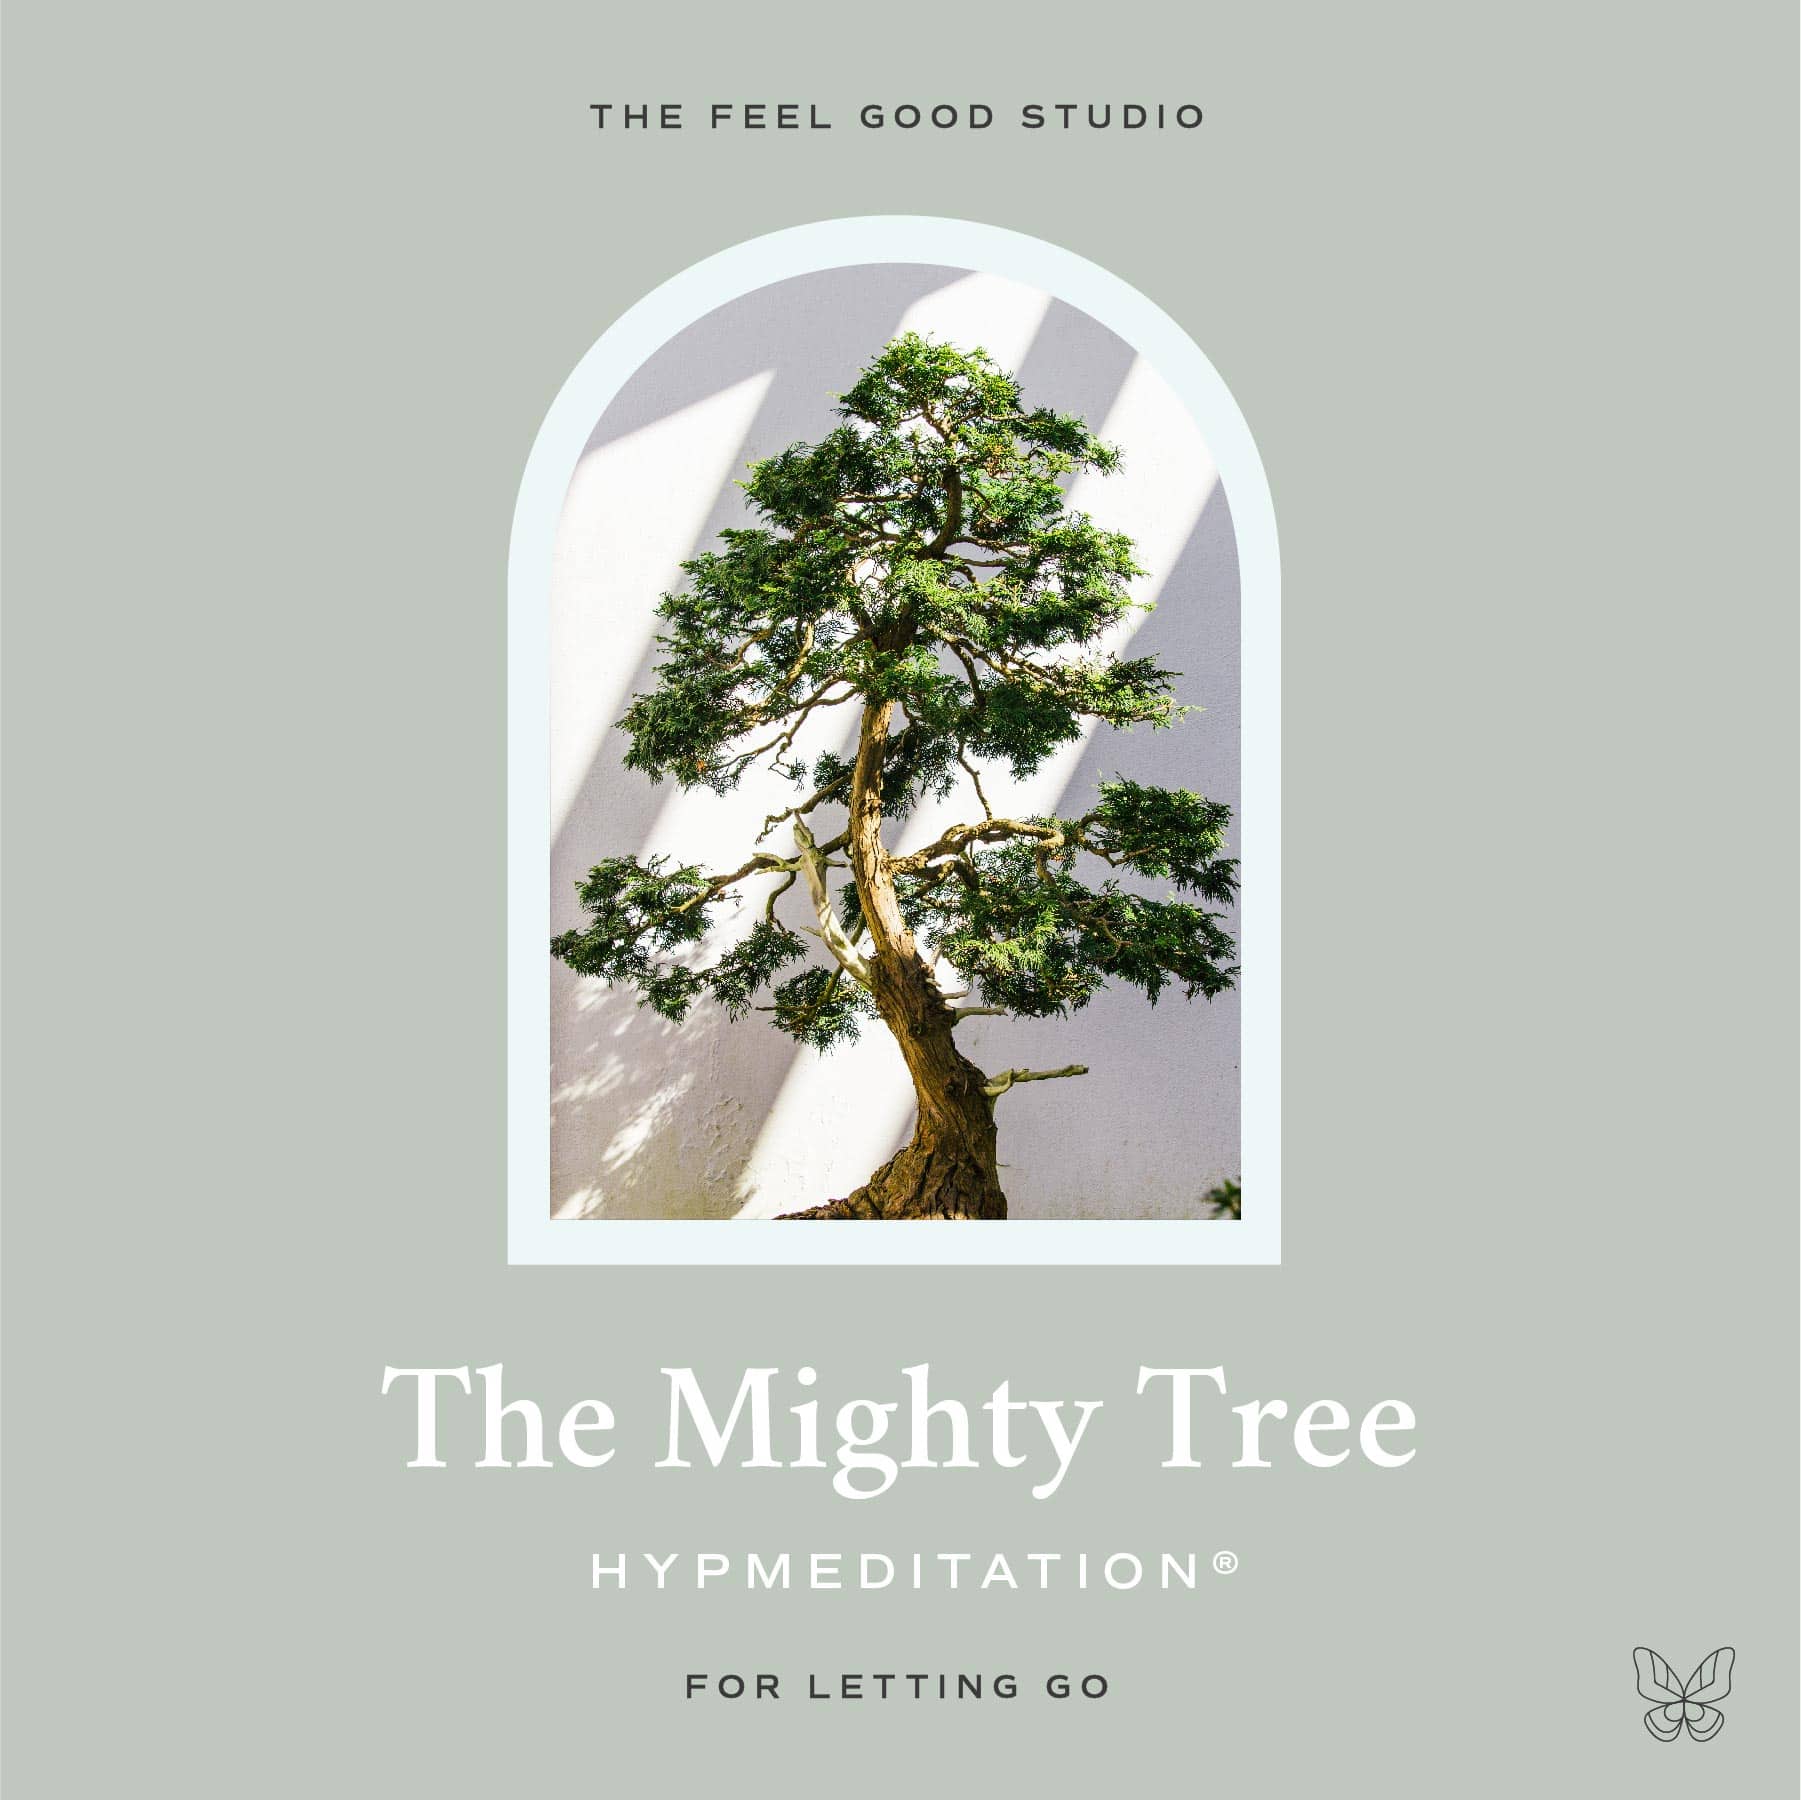 The Mighty Tree HypMeditation